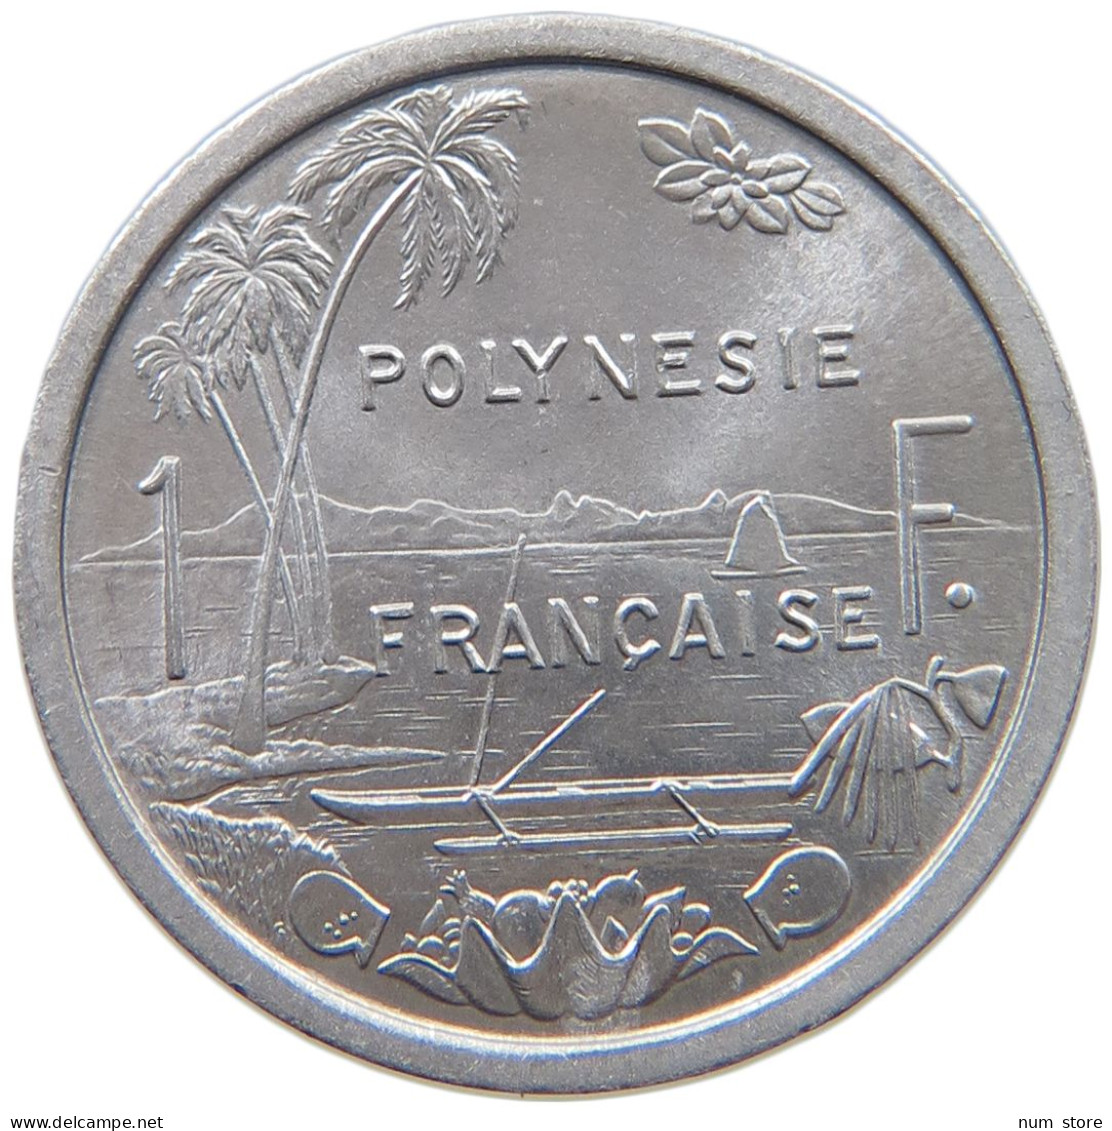 POLYNESIA FRANC 1965  #c035 0385 - French Polynesia